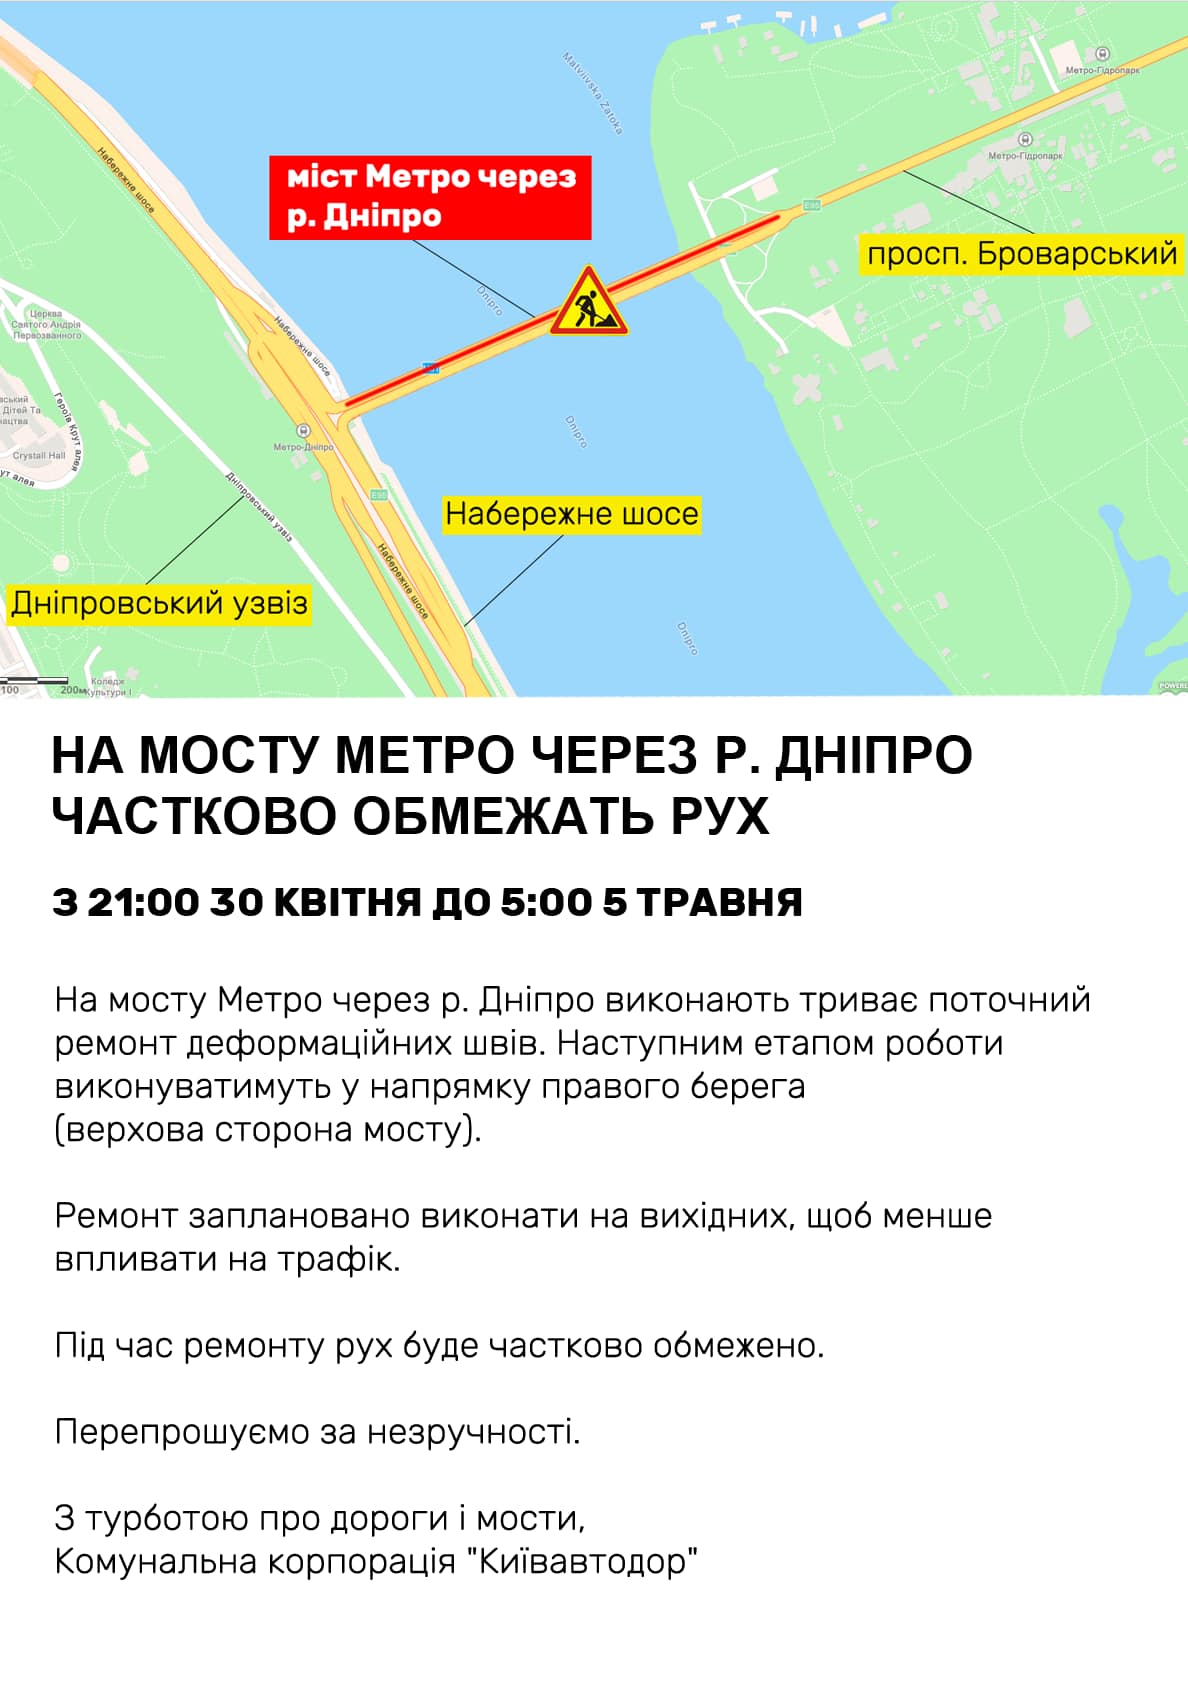 В Киеве будет ограничено движение по мосту Метро. Скриншот из фейсбука Киевавтодора